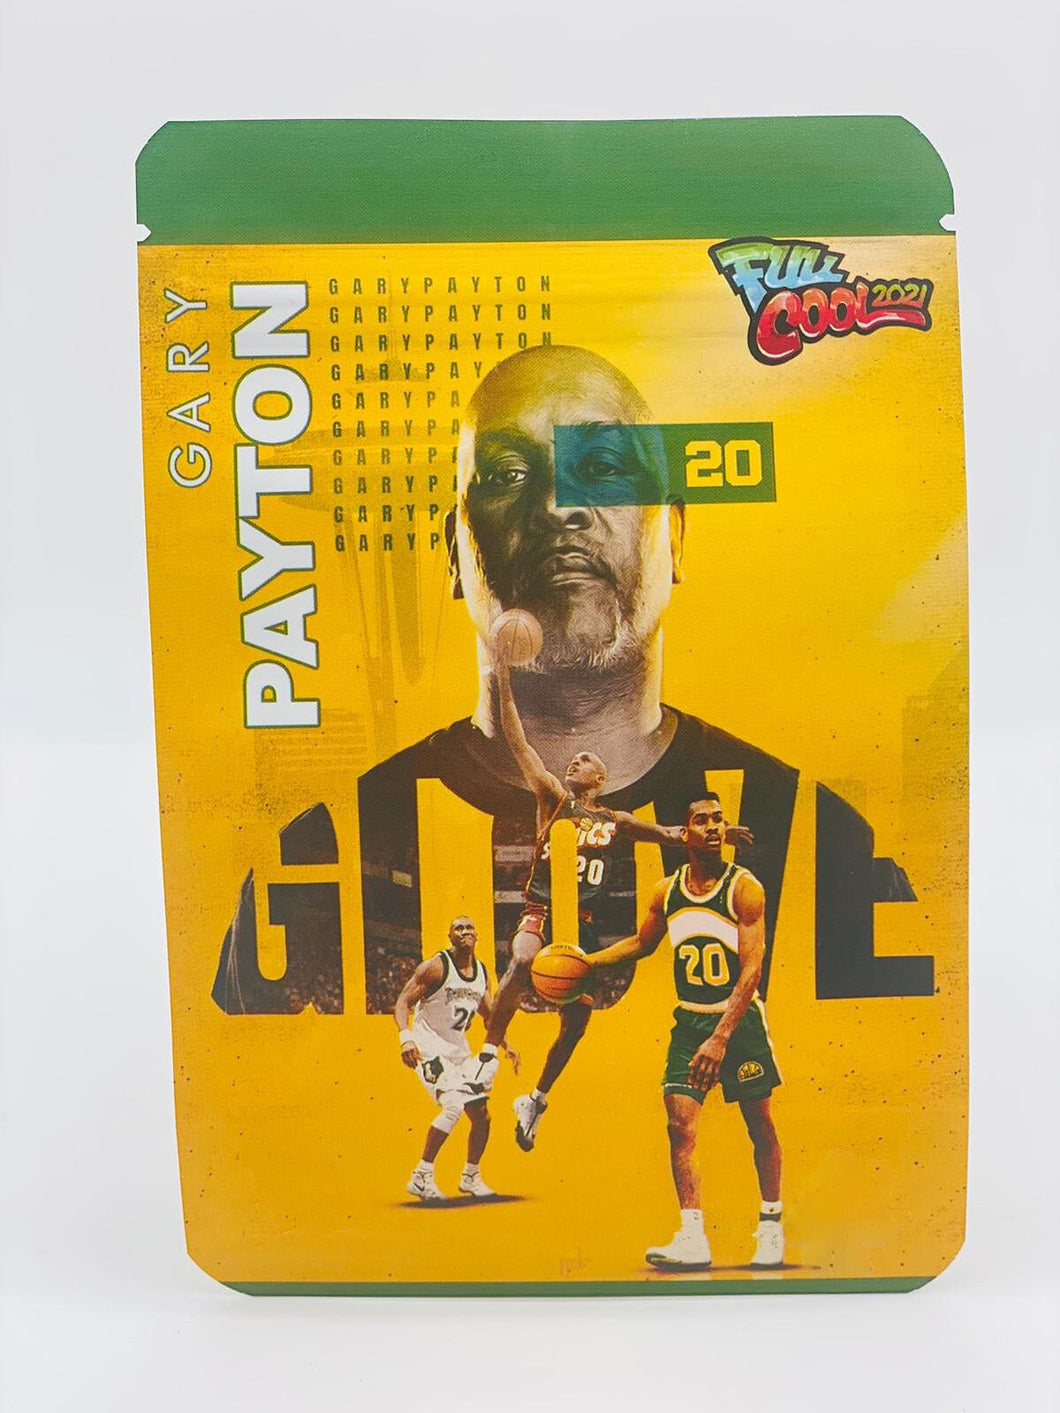 50 Gary Payton 3.5 gram empty Mylar bags